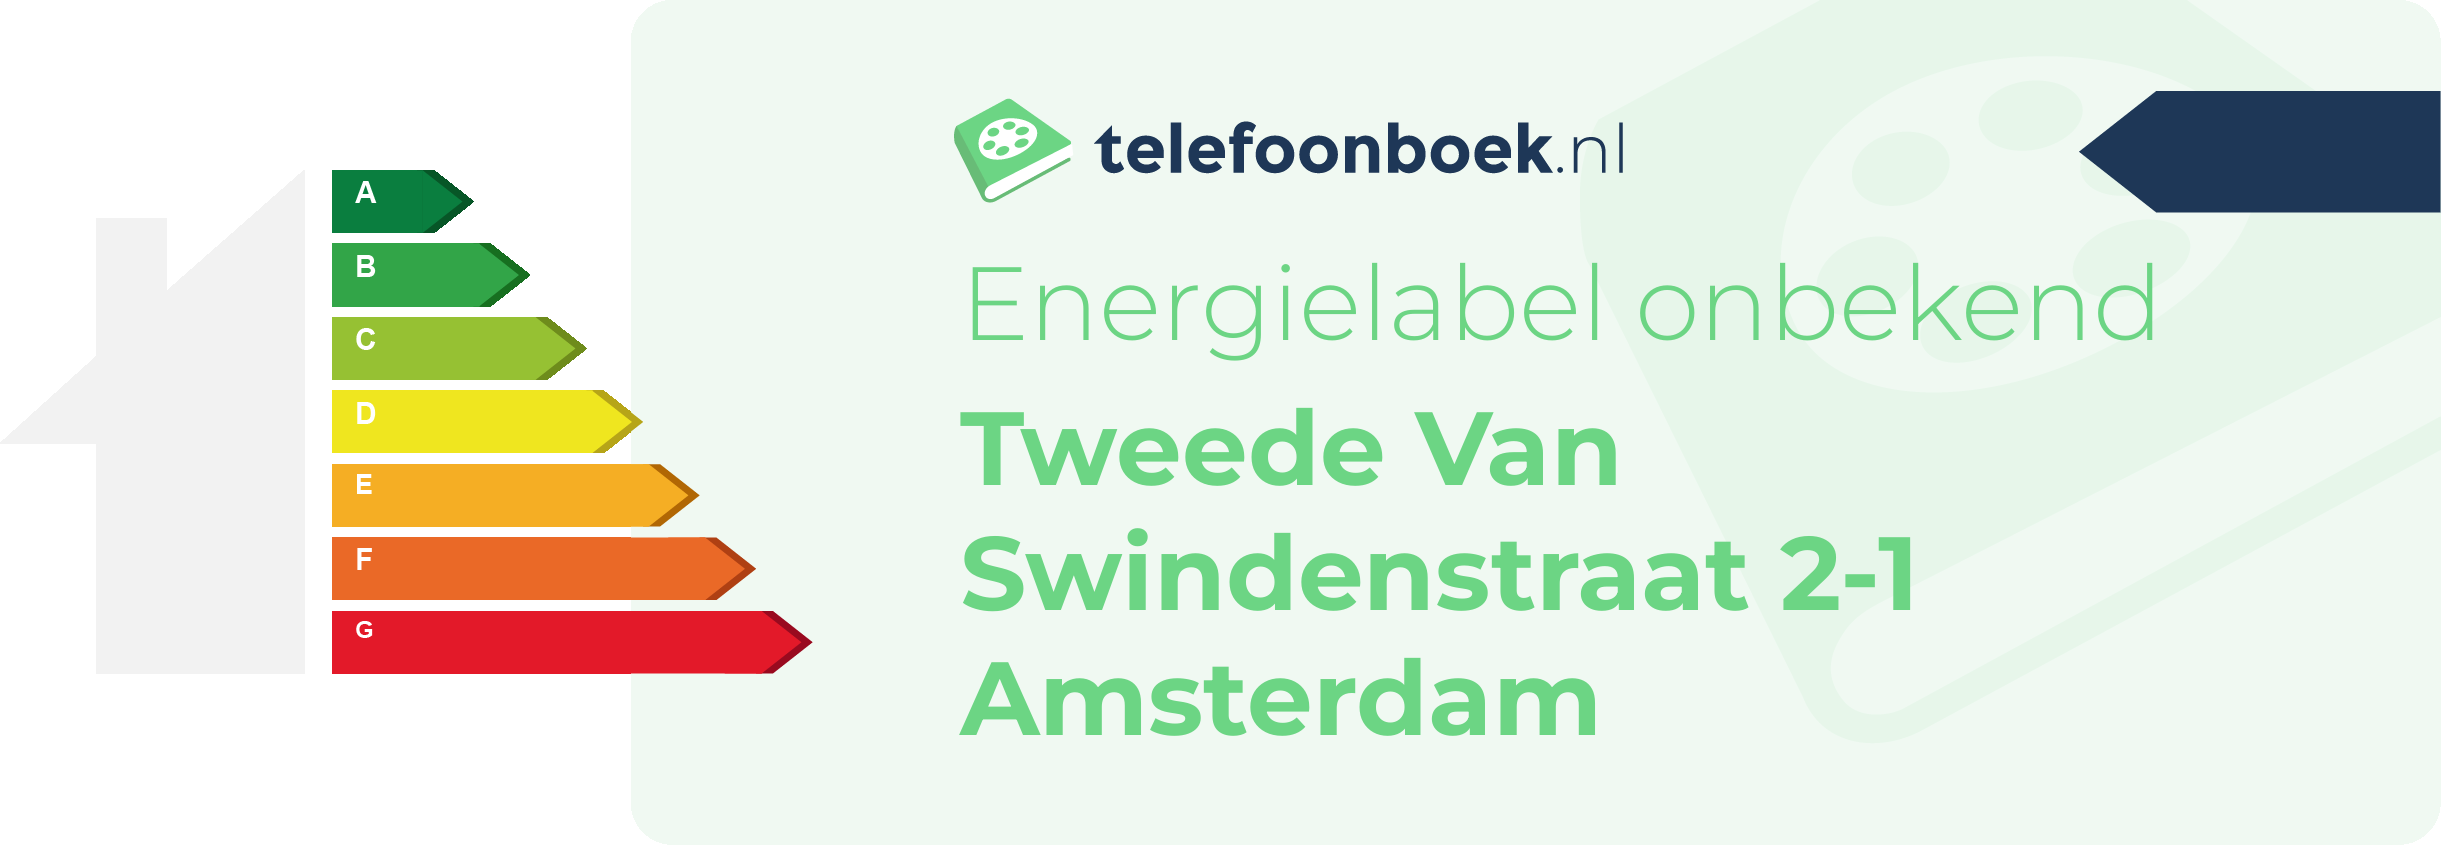 Energielabel Tweede Van Swindenstraat 2-1 Amsterdam